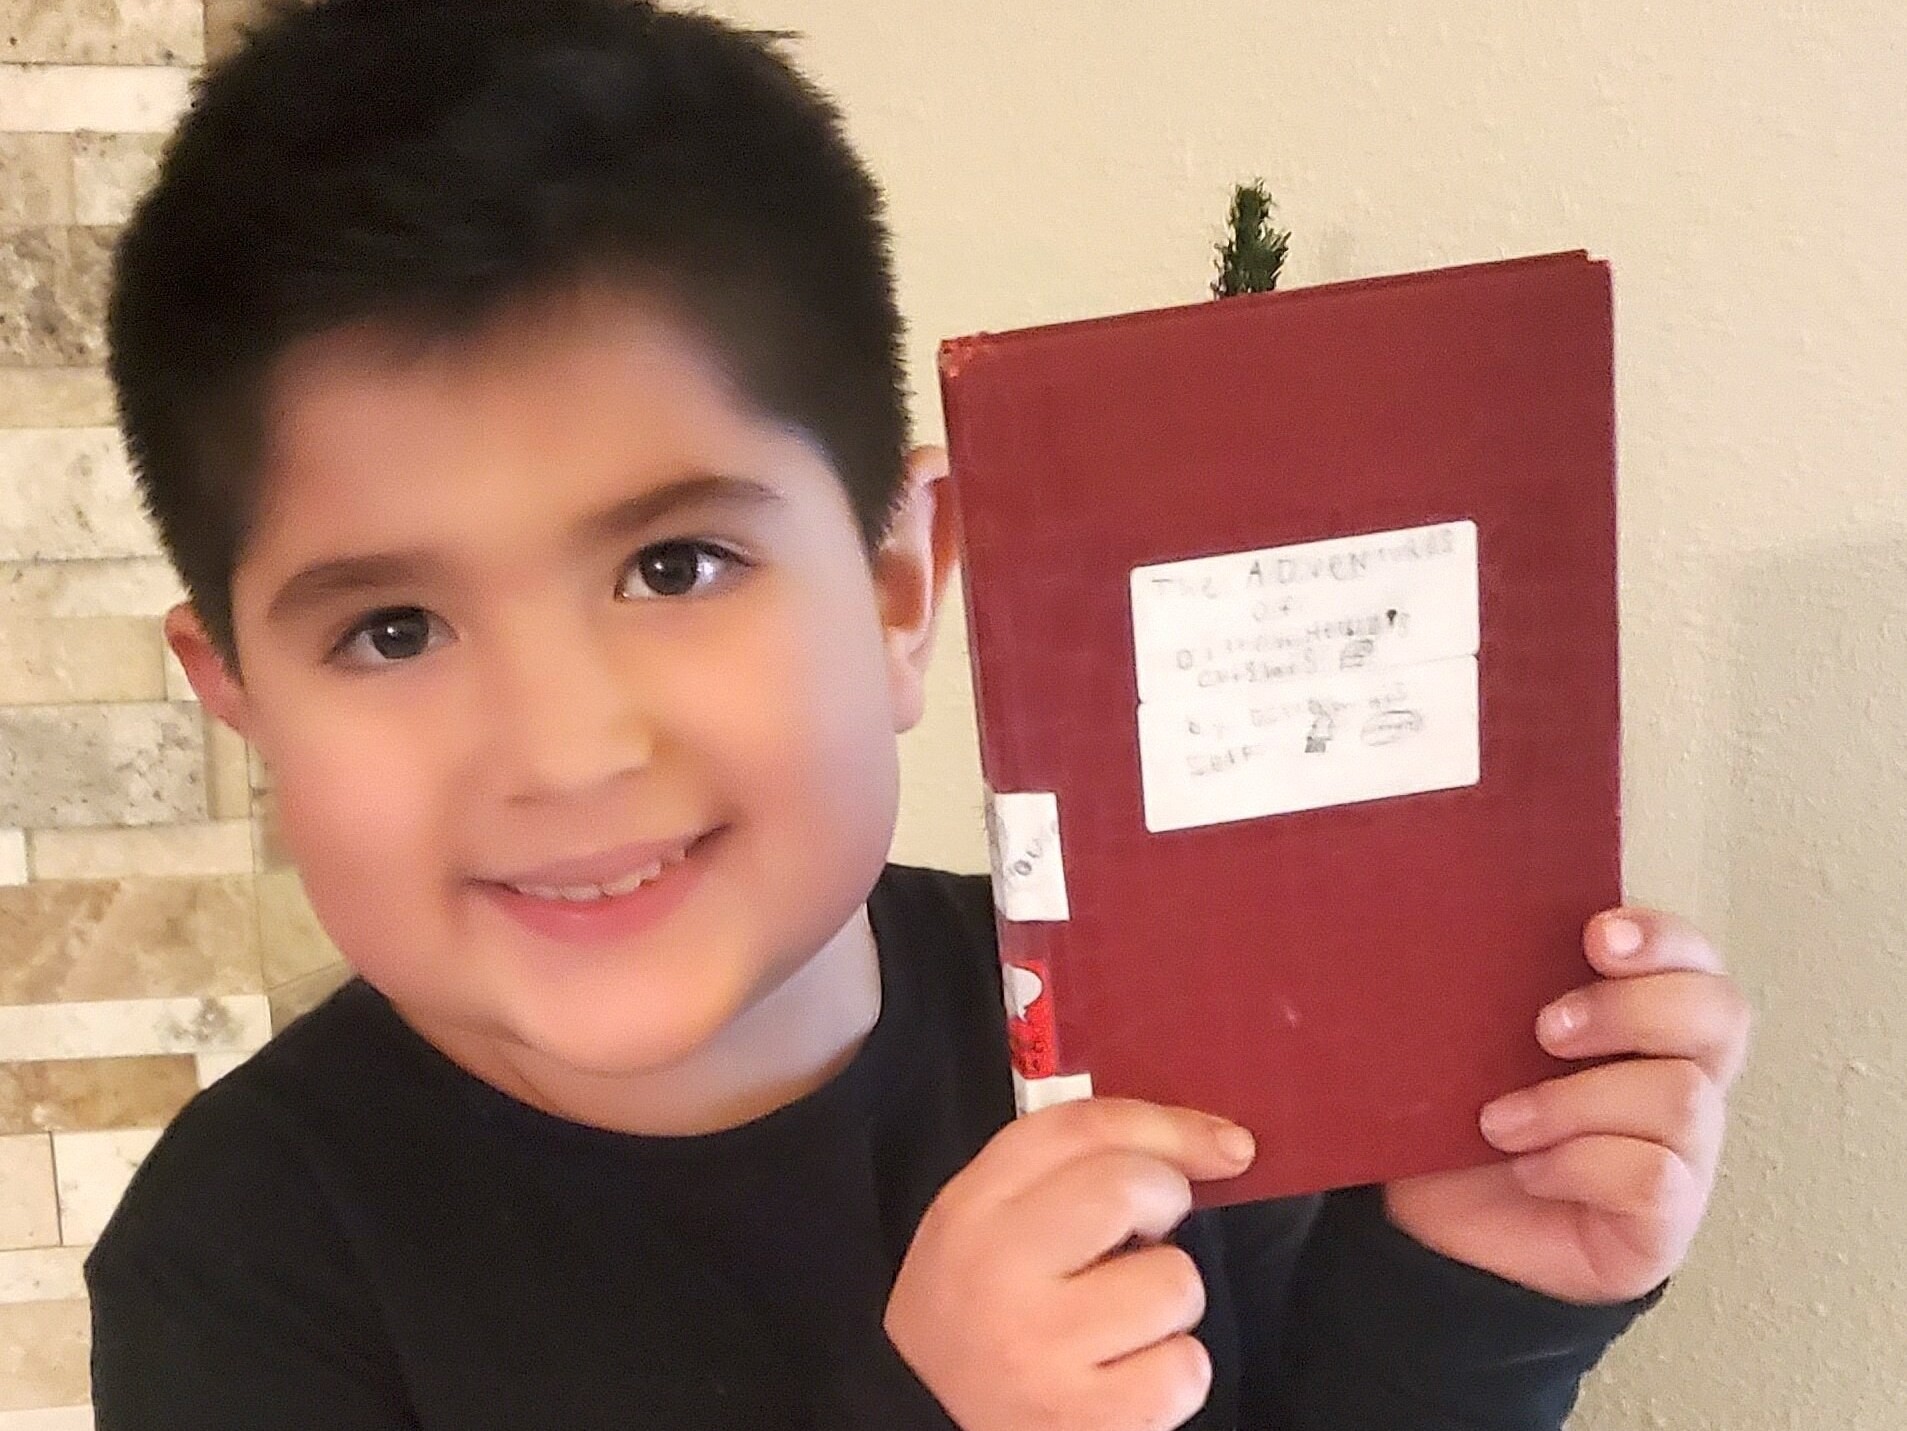 Garoto de 8 anos põe livro feito por ele à mão em prateleira de biblioteca e vira sucesso com 5 anos de espera